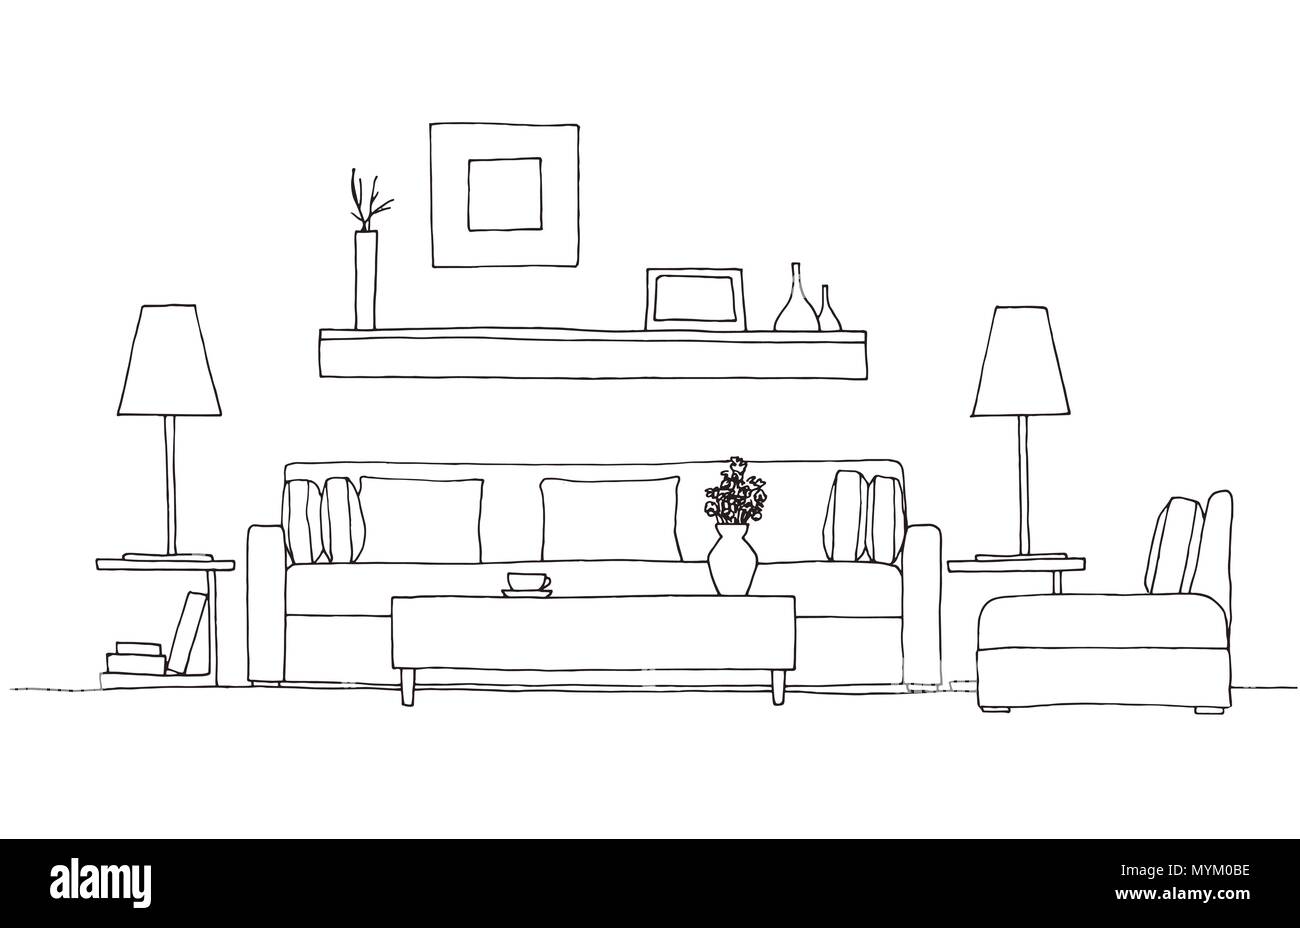 Canapé, fauteuil, table et lampe avec plante en pot. Hand drawn vector illustration d'un croquis de style. Illustration de Vecteur